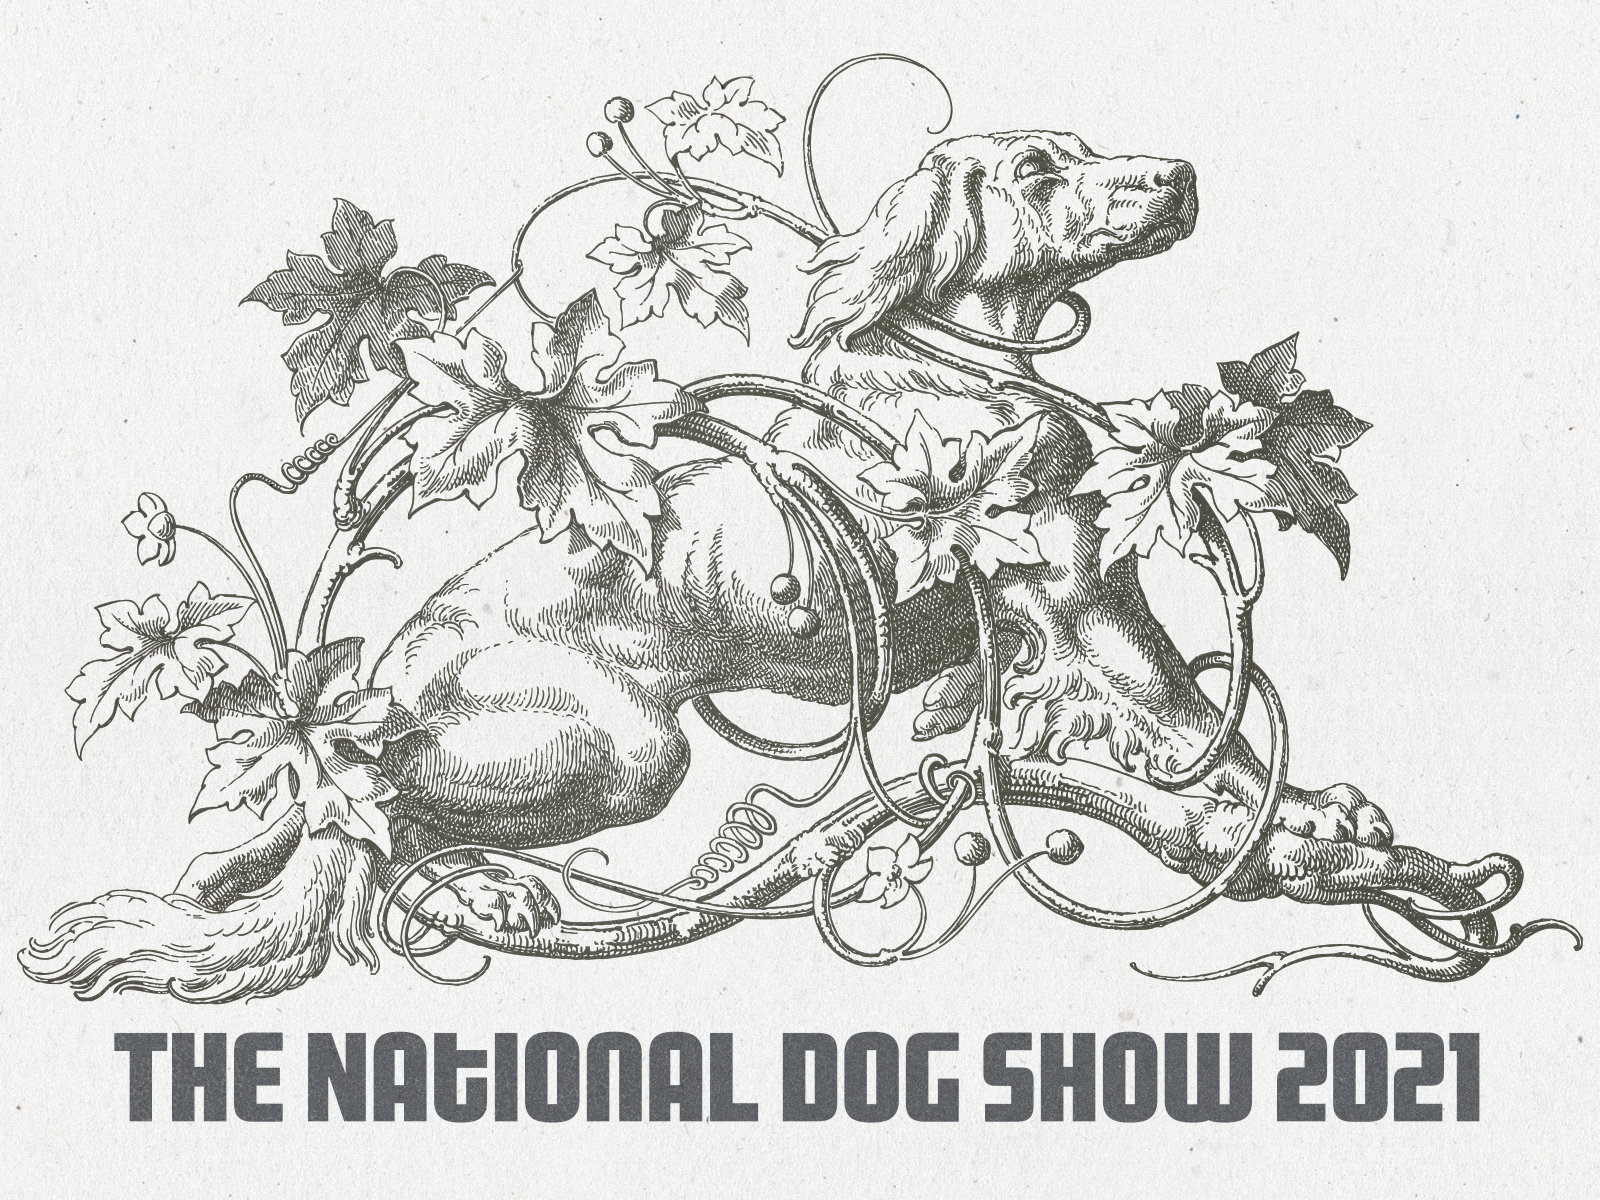 Dog Show 2021 ... dog lineart ornament illustration vector graphic vectorart vector illustration